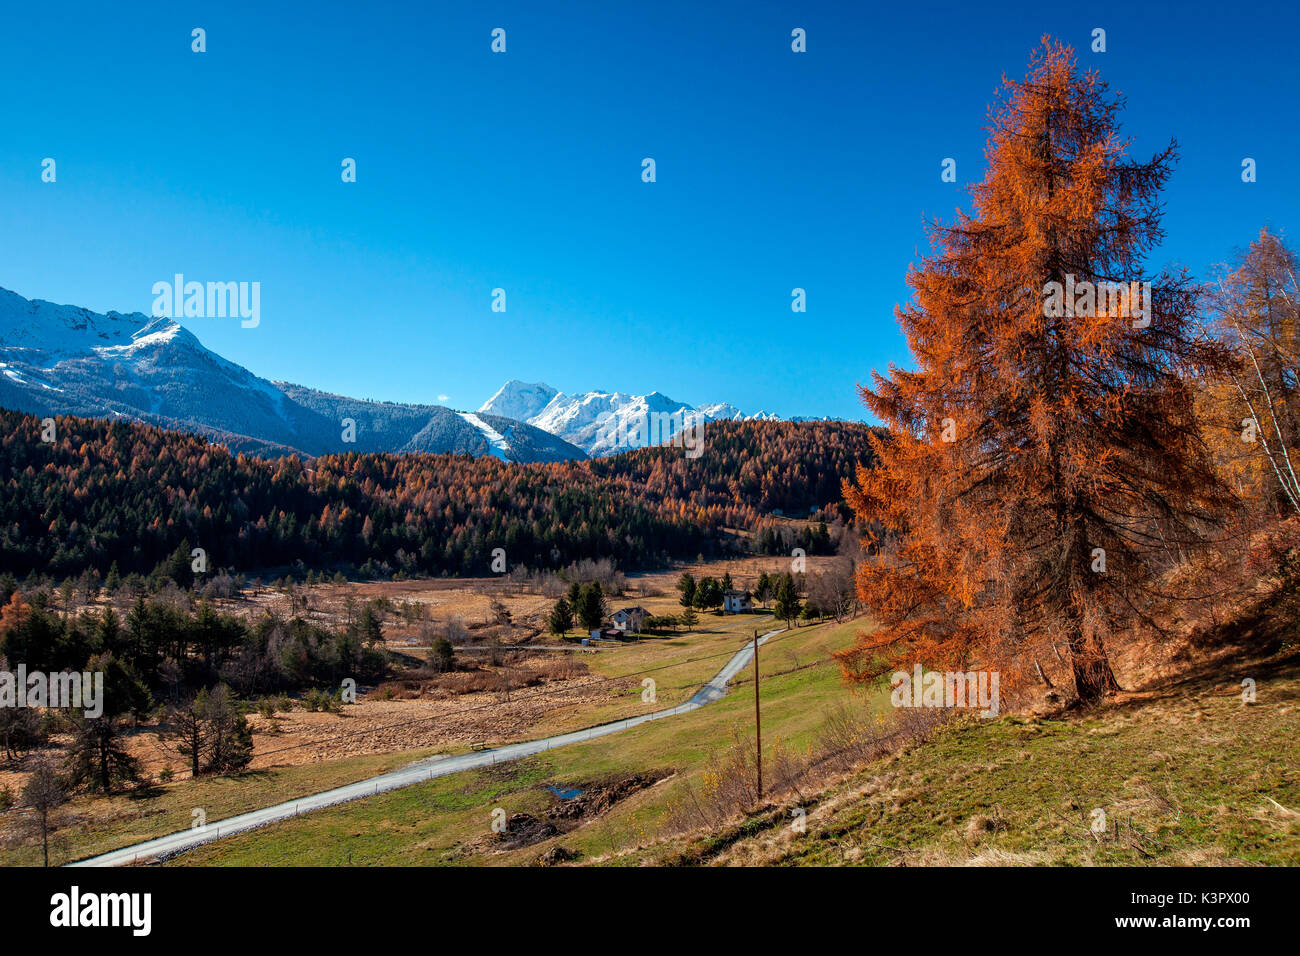 Les riches oranges des arbres dans la plaine Trivigno contrastant avec le blanc des sommets enneigés en arrière-plan - Trivigno, Valtellina, Sondrio, Lombardie, Italie. L'Europe Banque D'Images